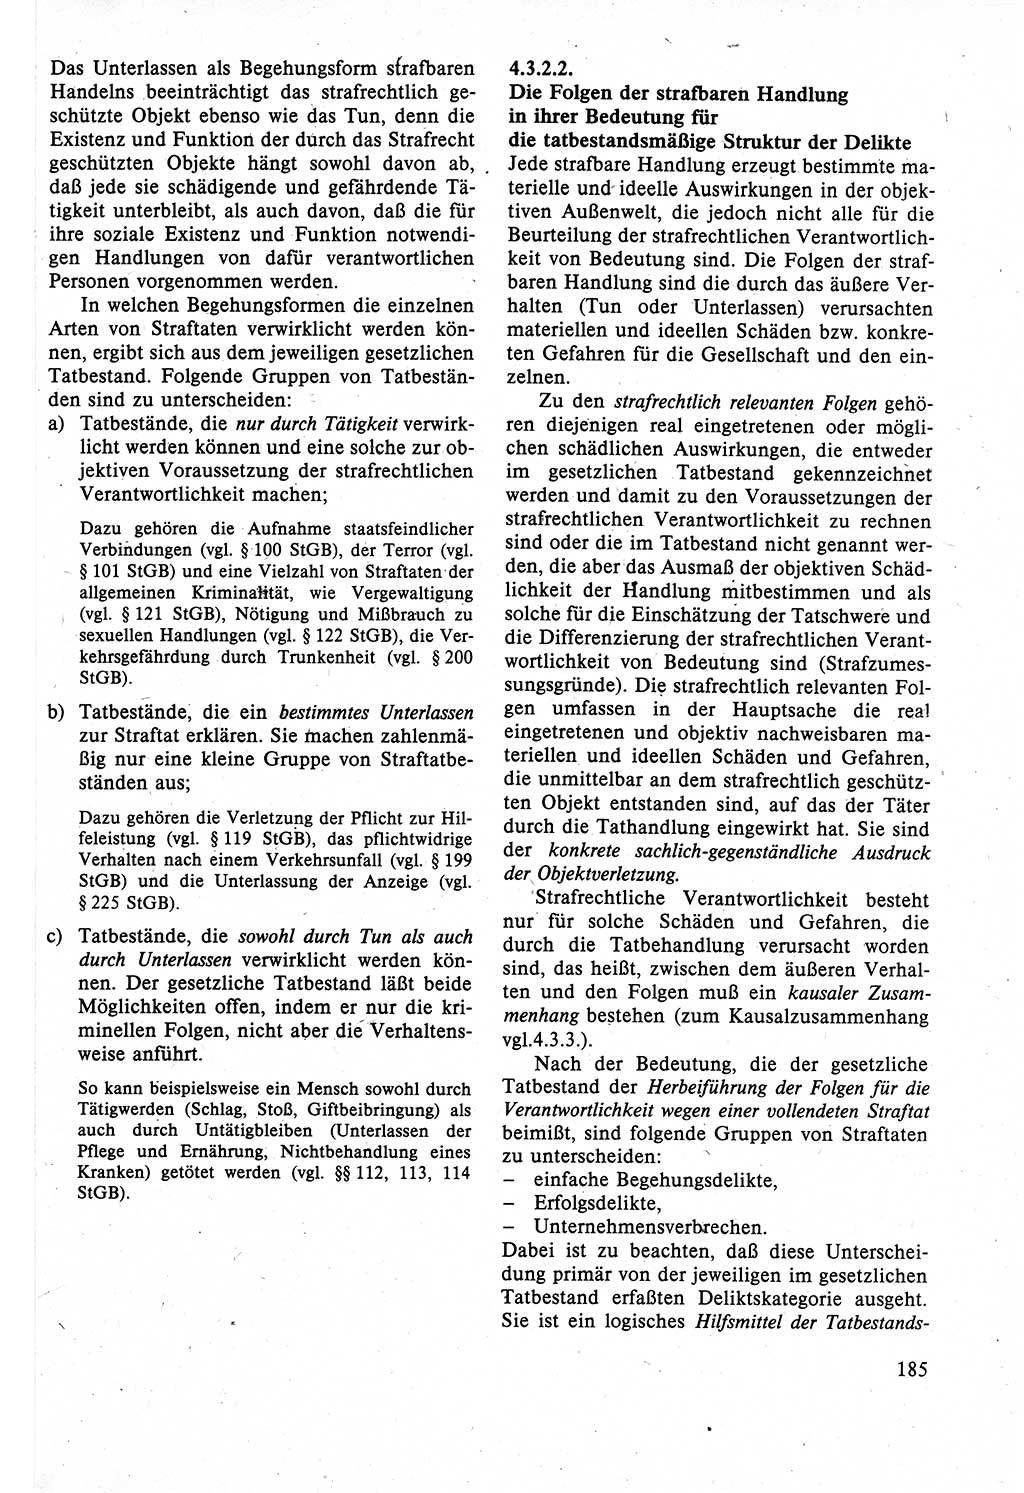 Strafrecht der DDR (Deutsche Demokratische Republik), Lehrbuch 1988, Seite 185 (Strafr. DDR Lb. 1988, S. 185)